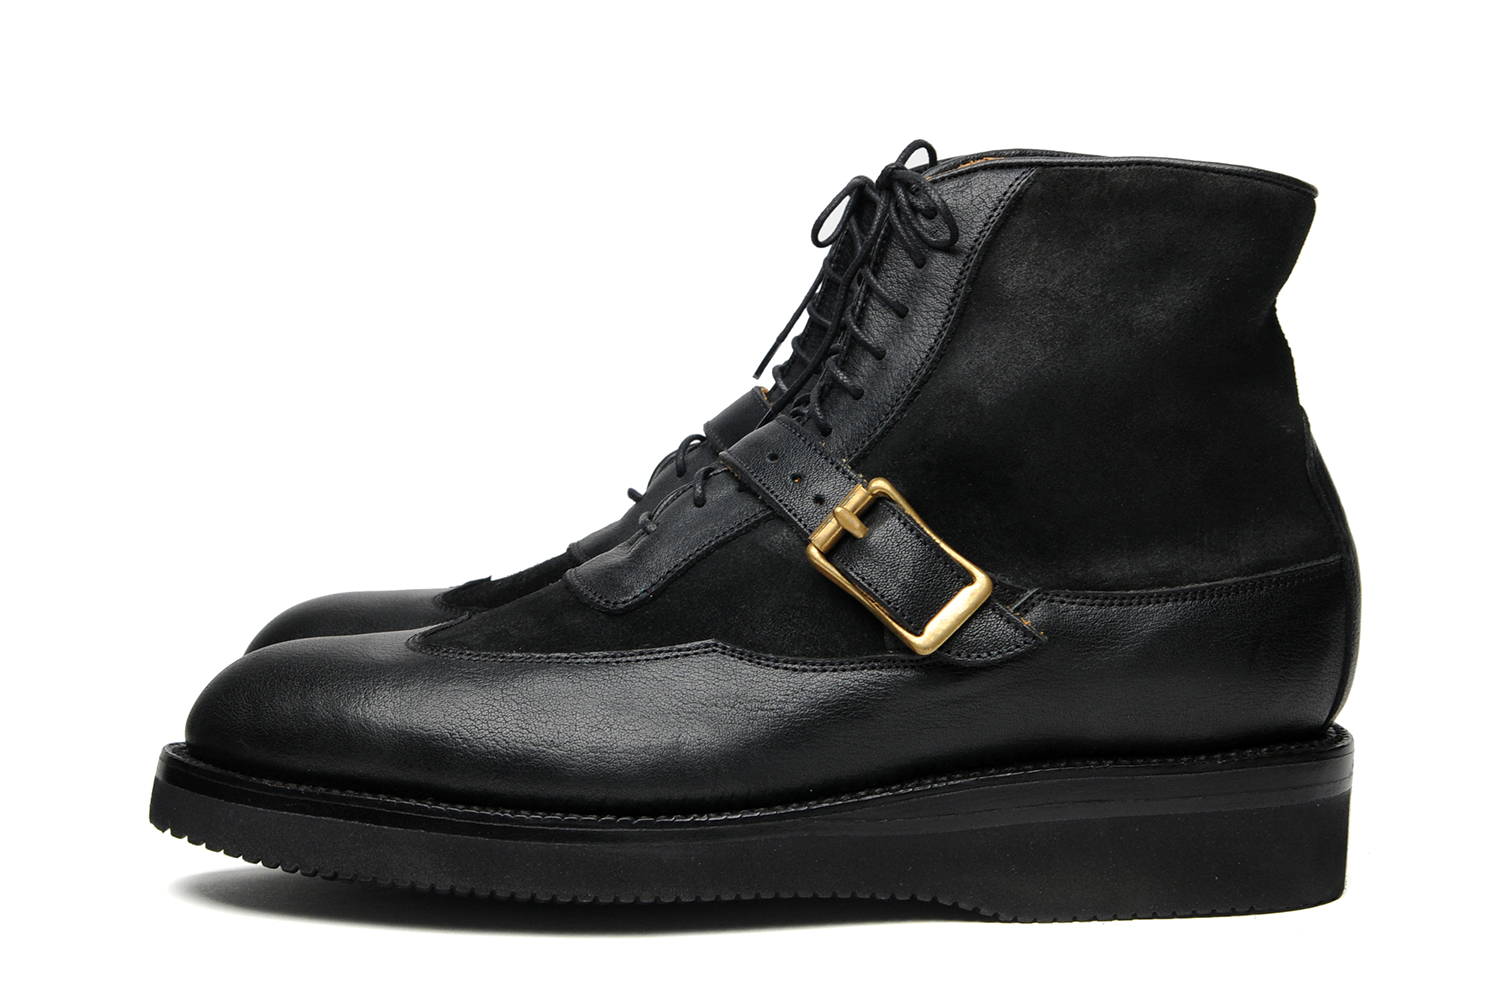 sierra-boots-w-strap-mc-black-x-black-suede-side.jpg